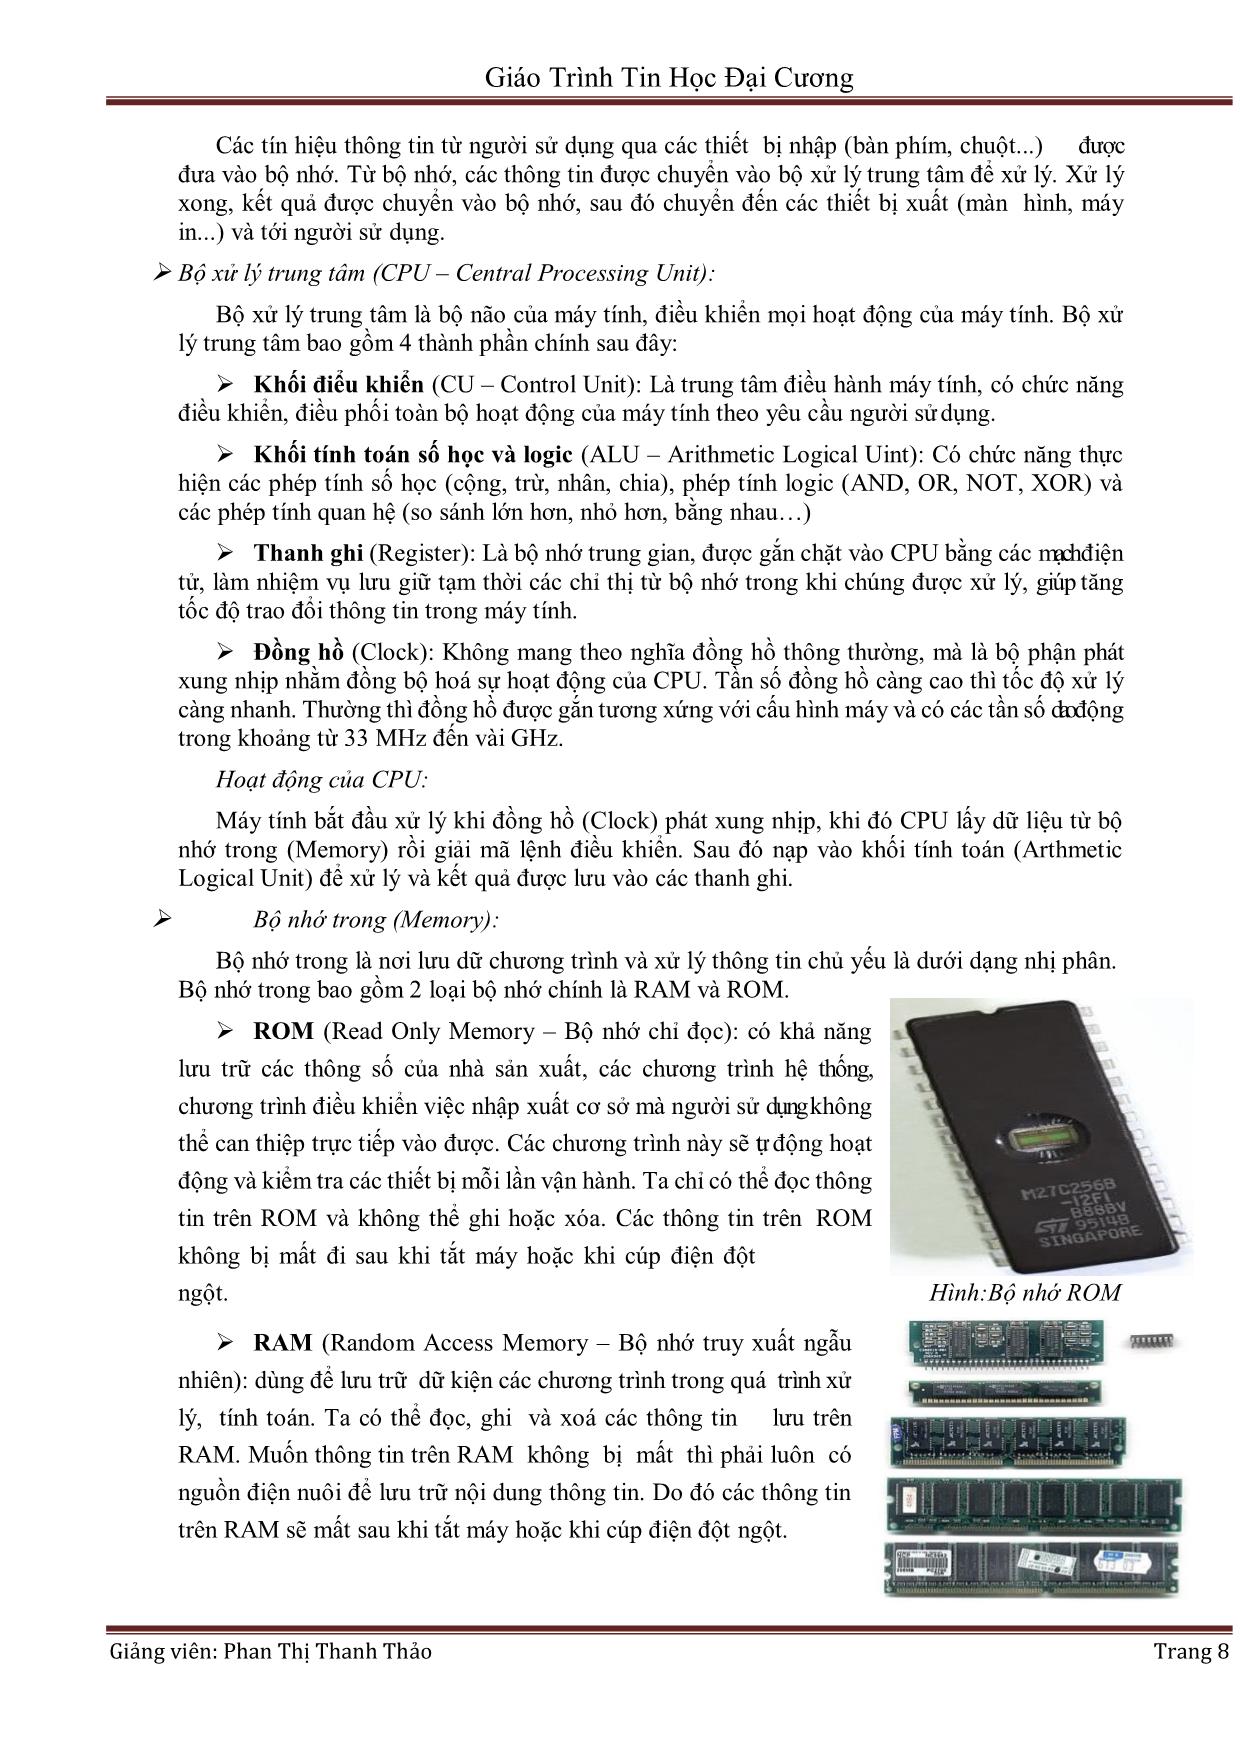 Giáo trình Tin học đại cương (Phần 1) - Phan Thị Thanh Thảo trang 8